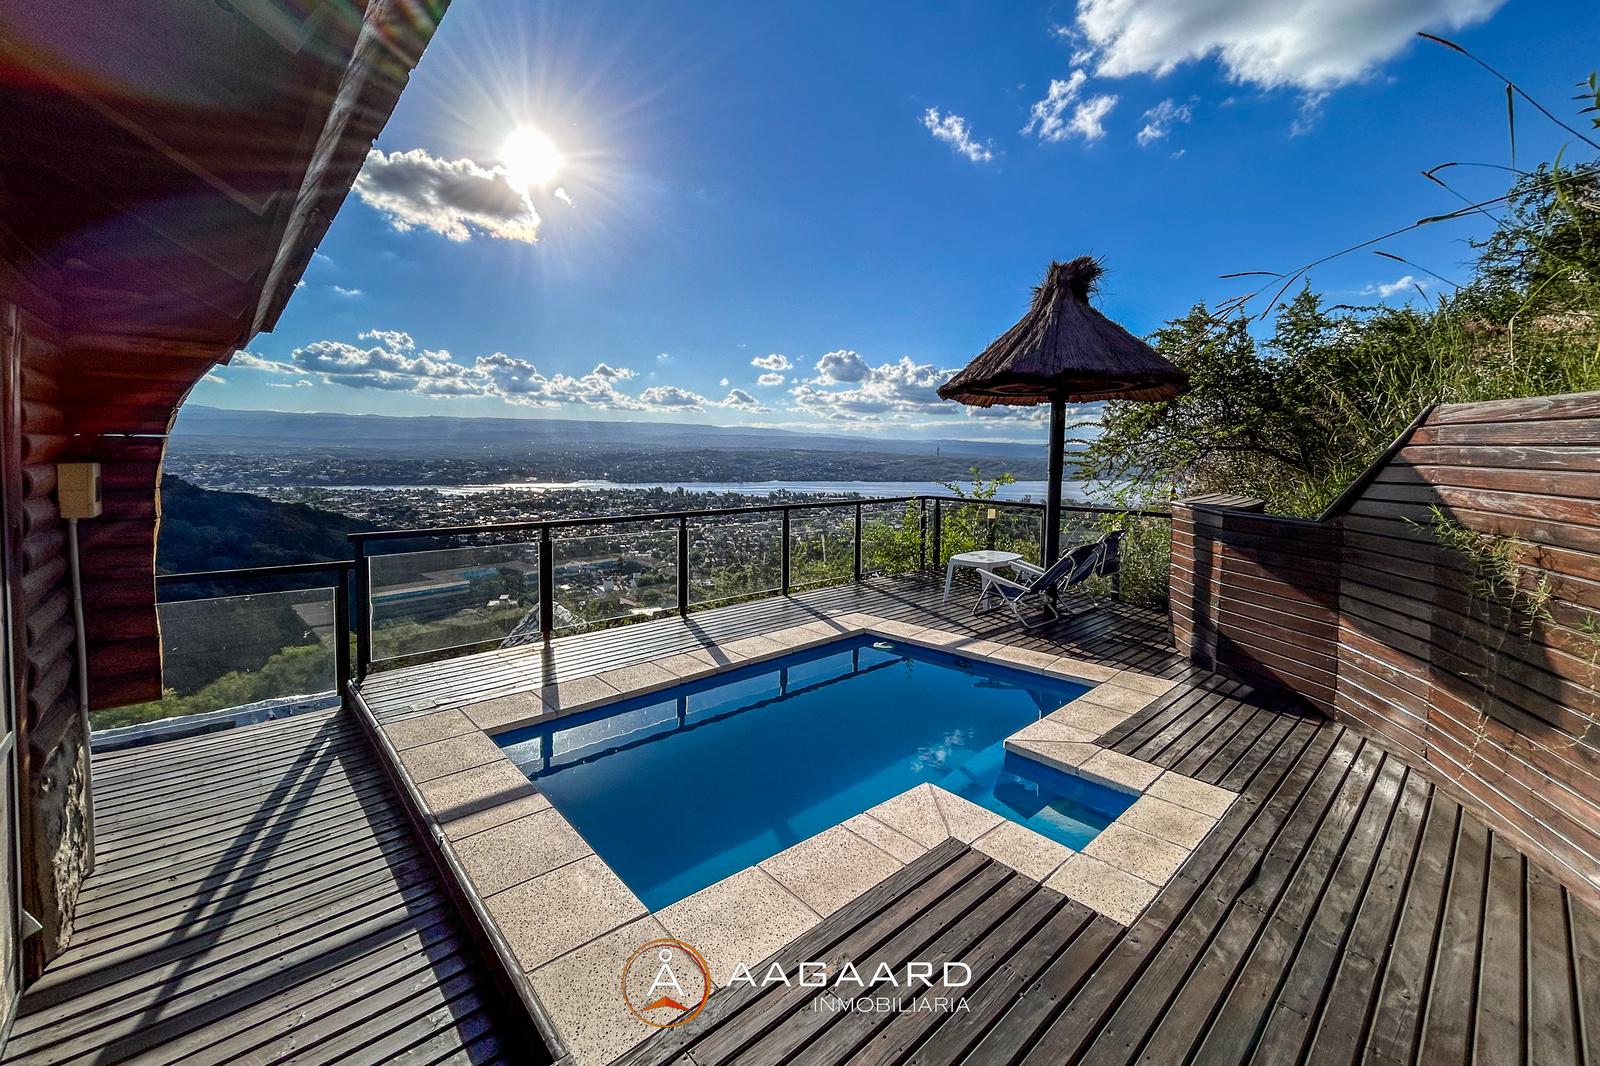 #5021399 | Sale | Horizontal Property | La Cuesta Villa Residencial (AAGAARD INMOBILIARIA)